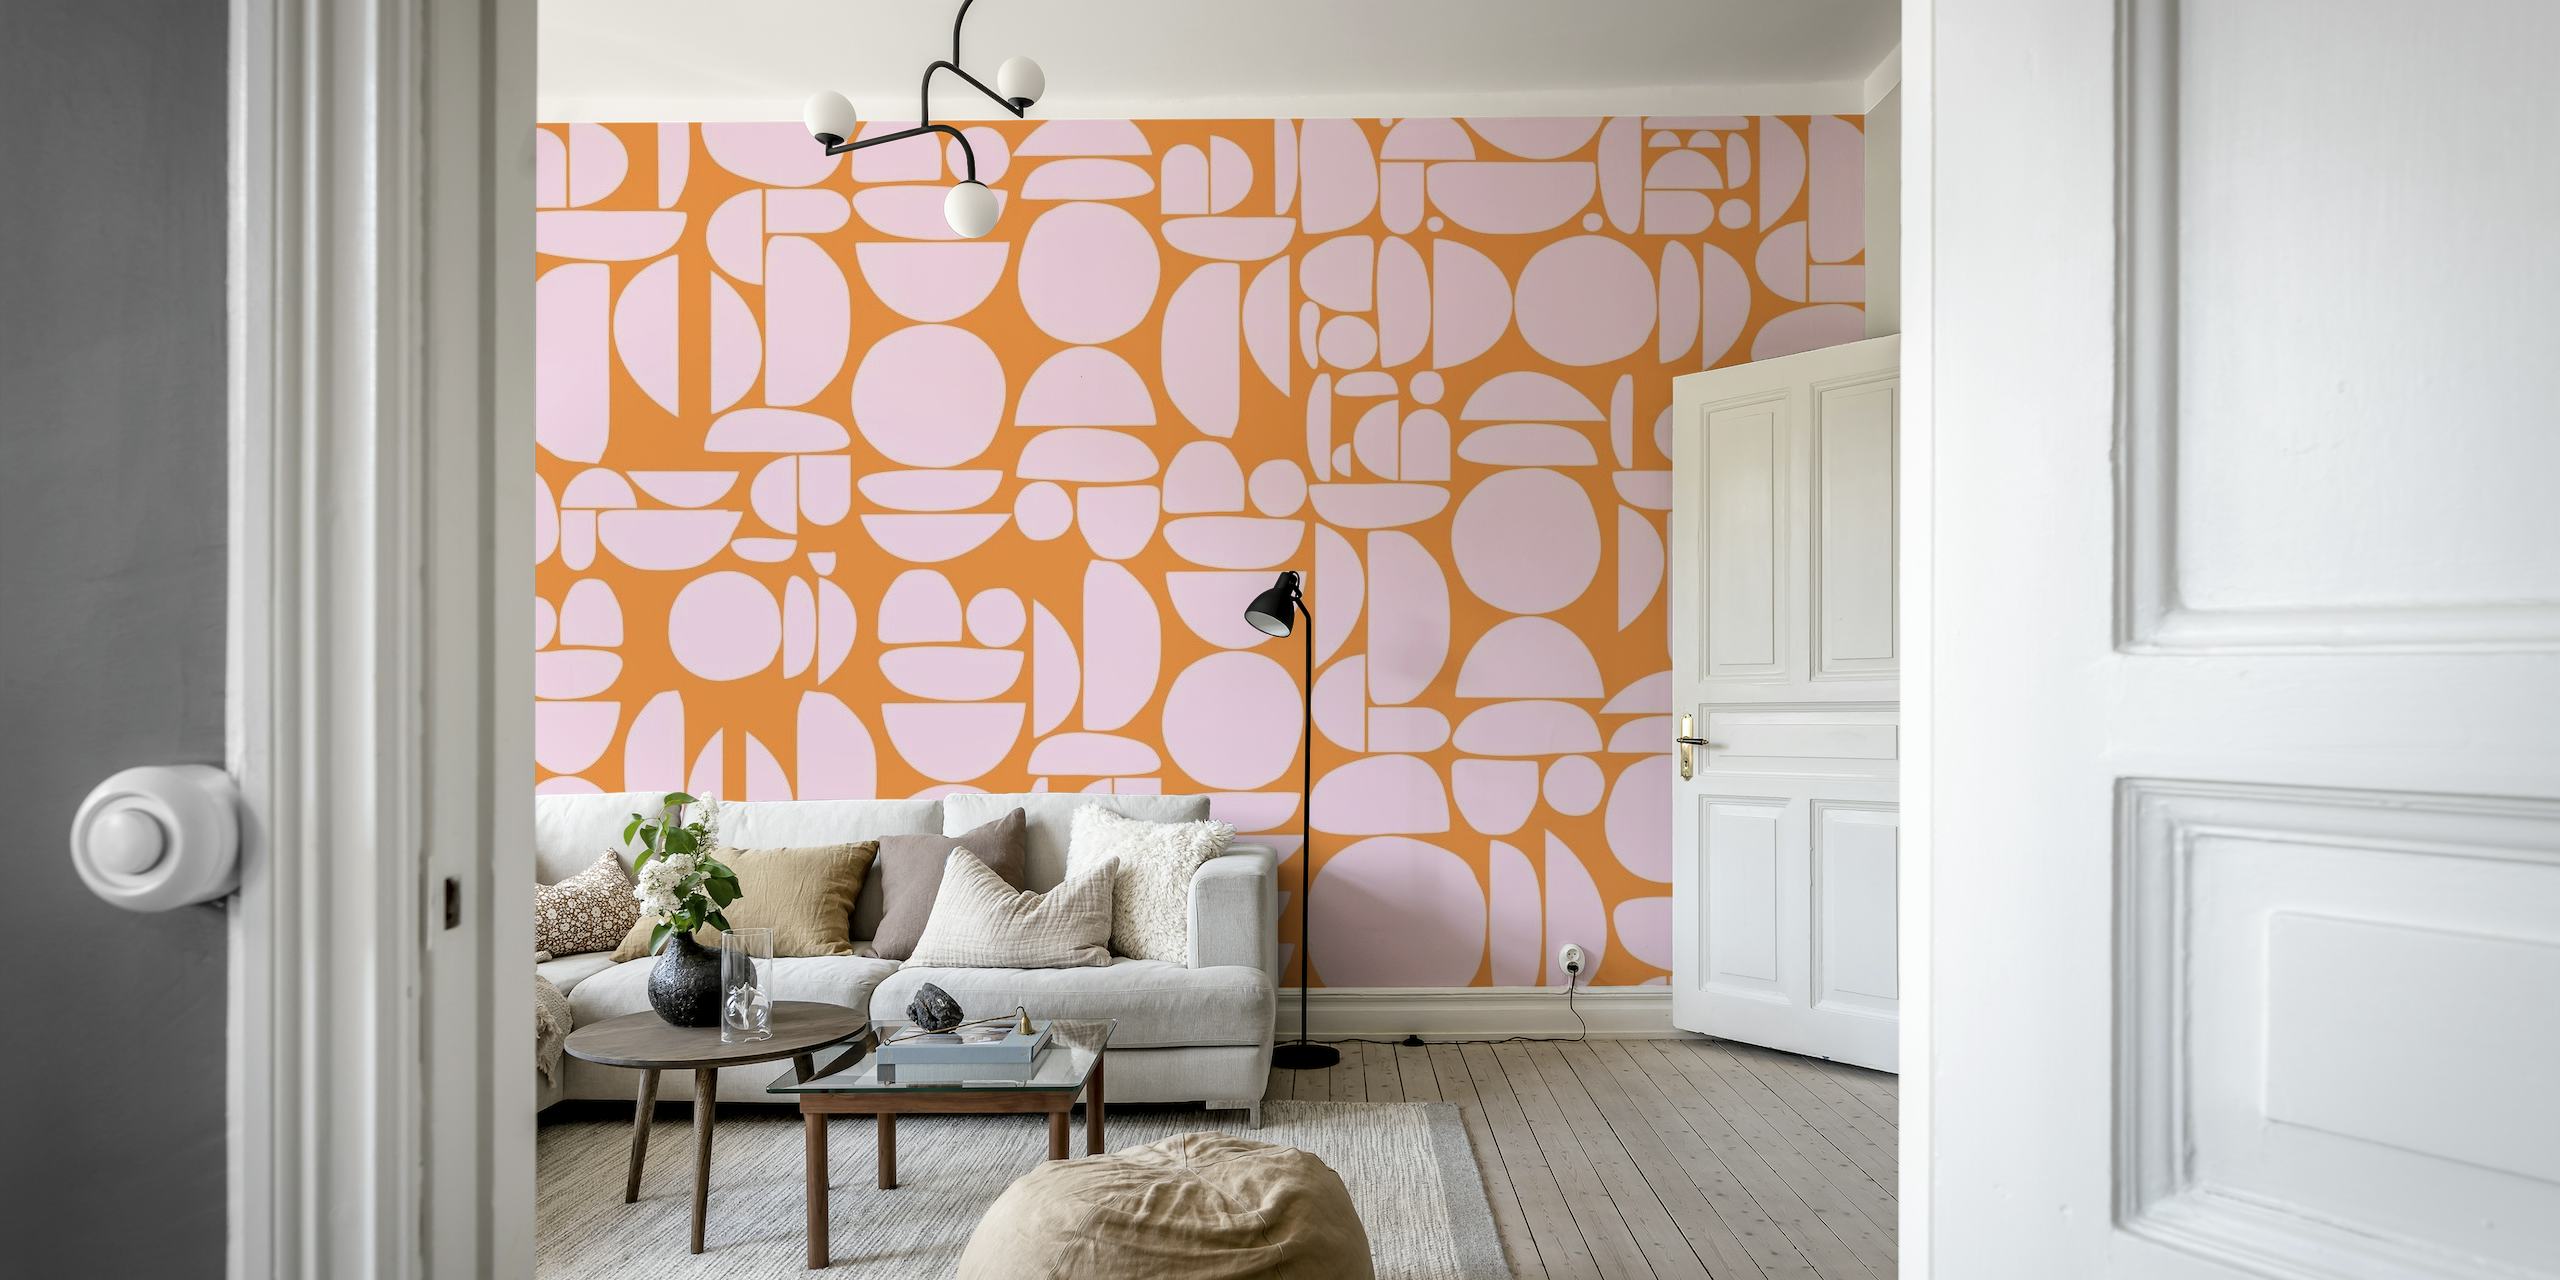 Conception de décoration murale abstraite de formes rondes découpées orange et rose